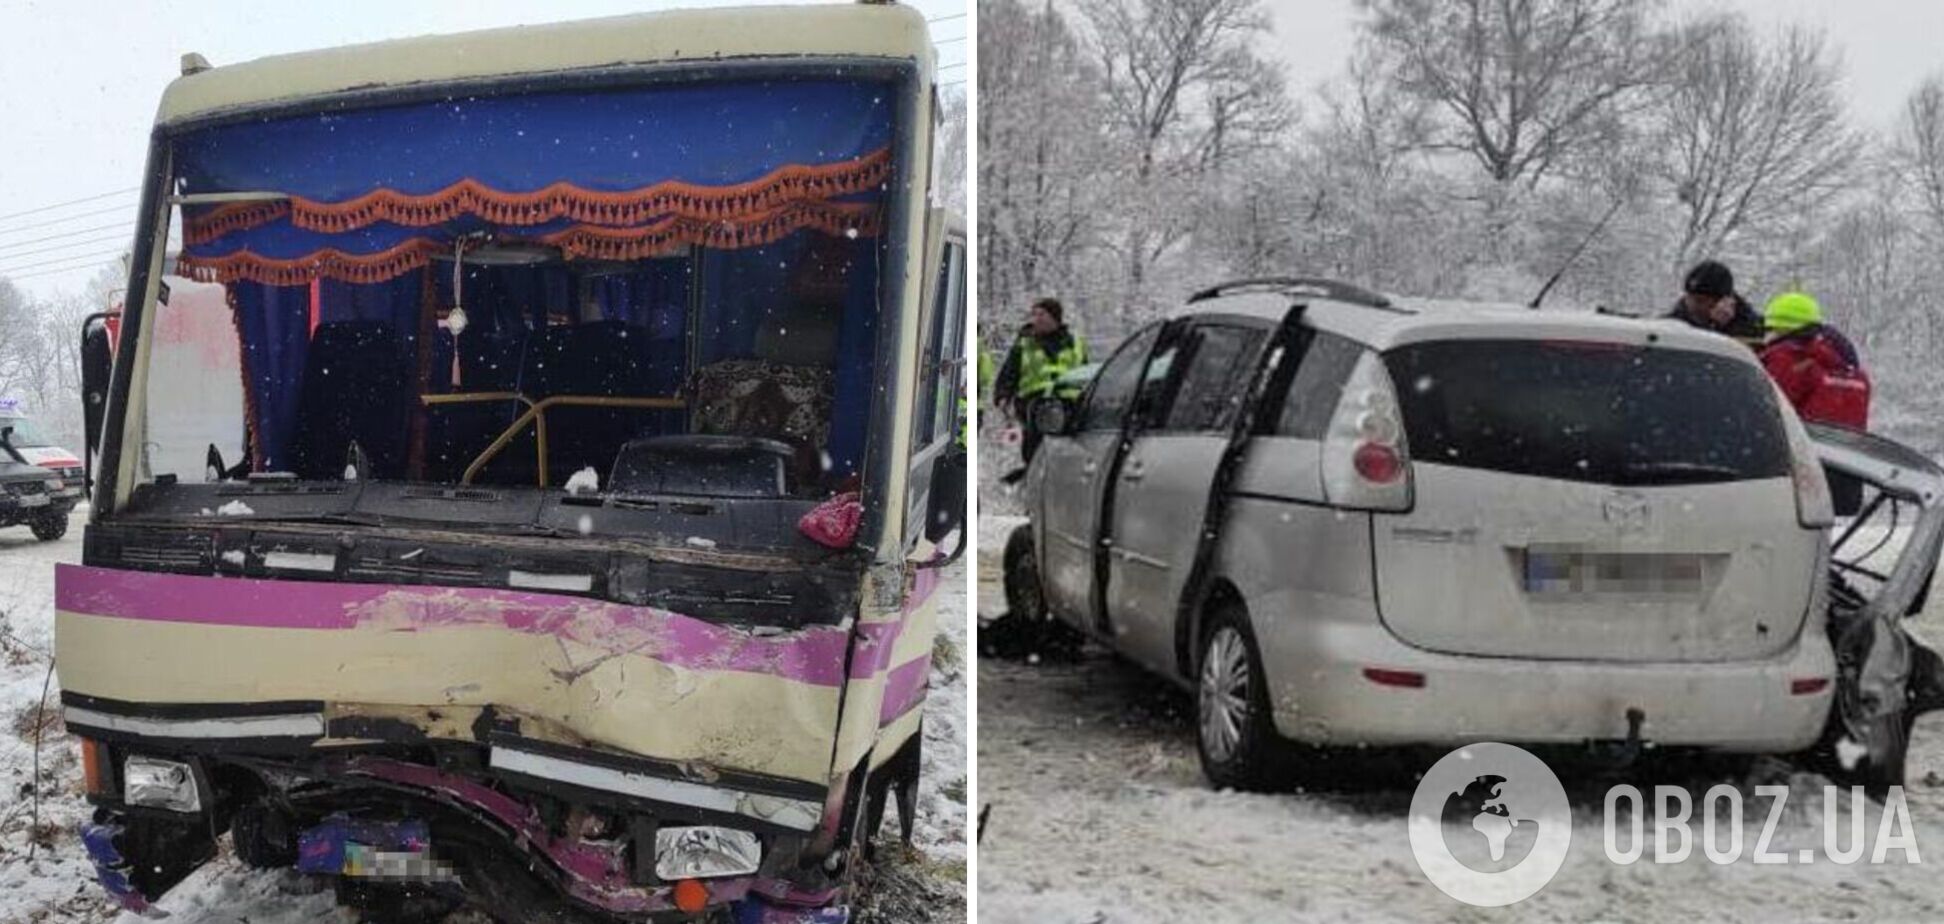 На Львовщине легковушка протаранила автобус с людьми: пострадали 7 человек. Фото